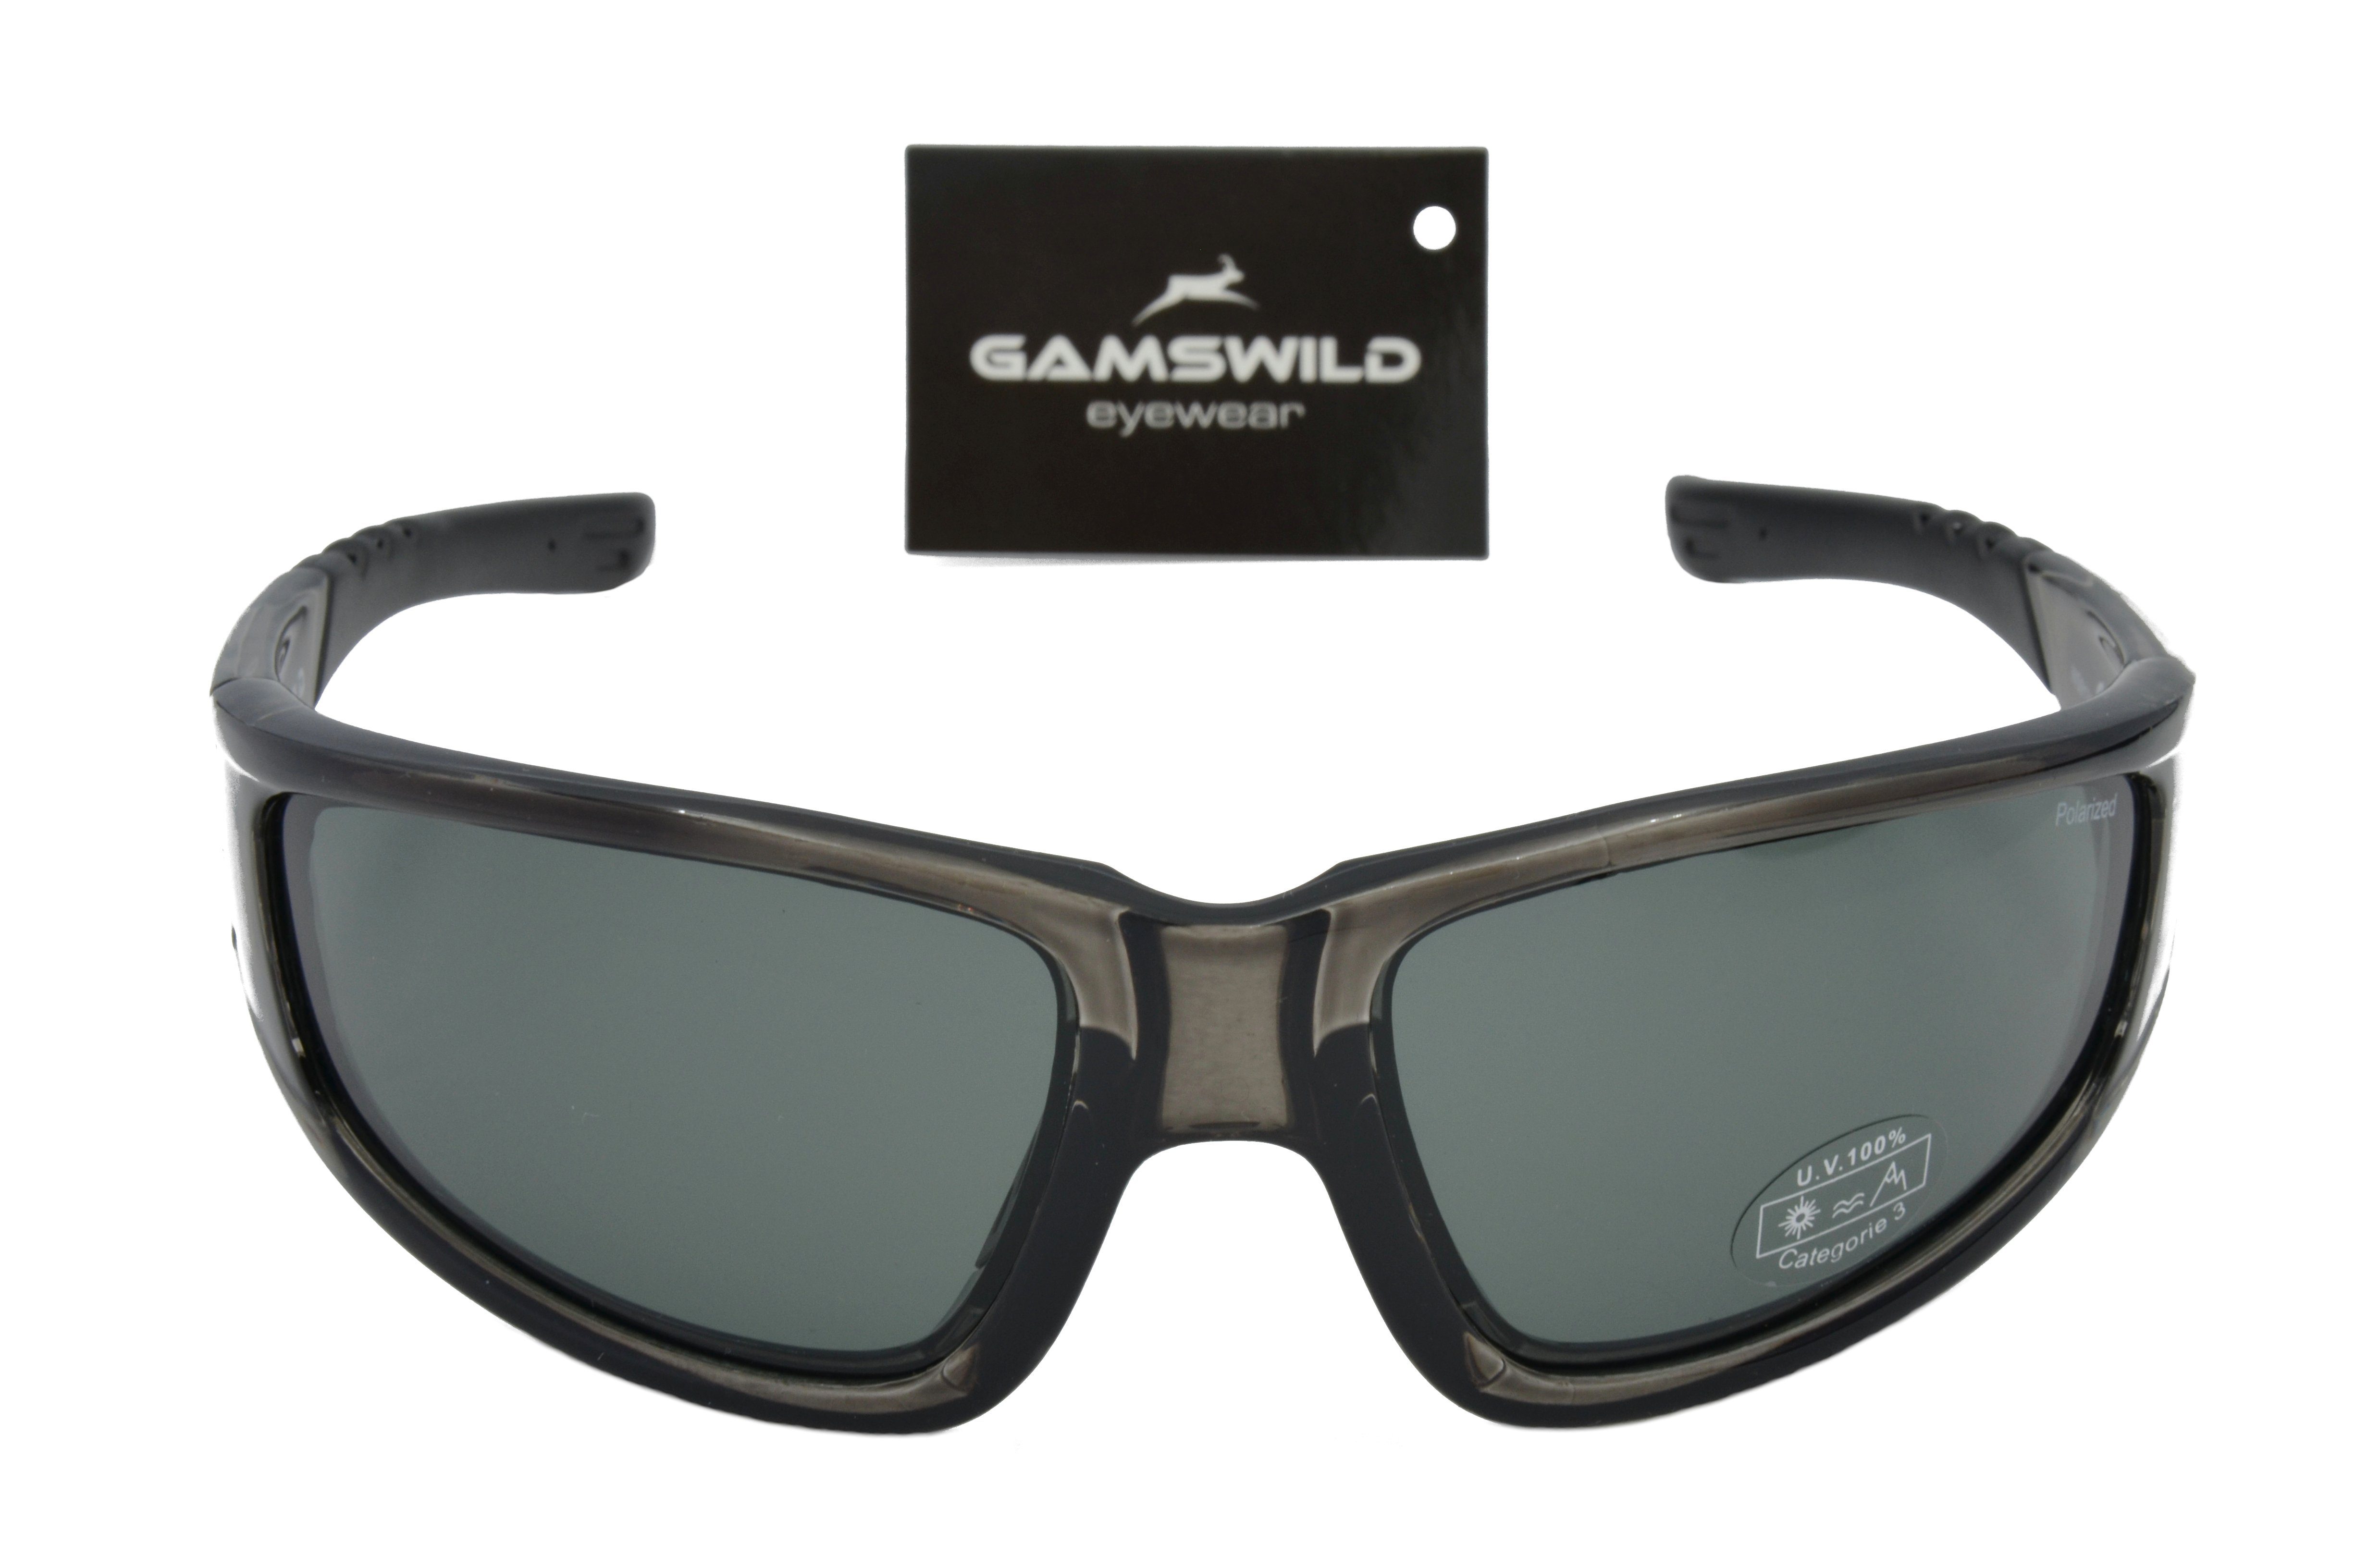 braun, Herren WS9131 Fahrradbrille polarisiert Unisex, Damen Skibrille Sportbrille Sonnenbrille Gamswild grau-transparent,